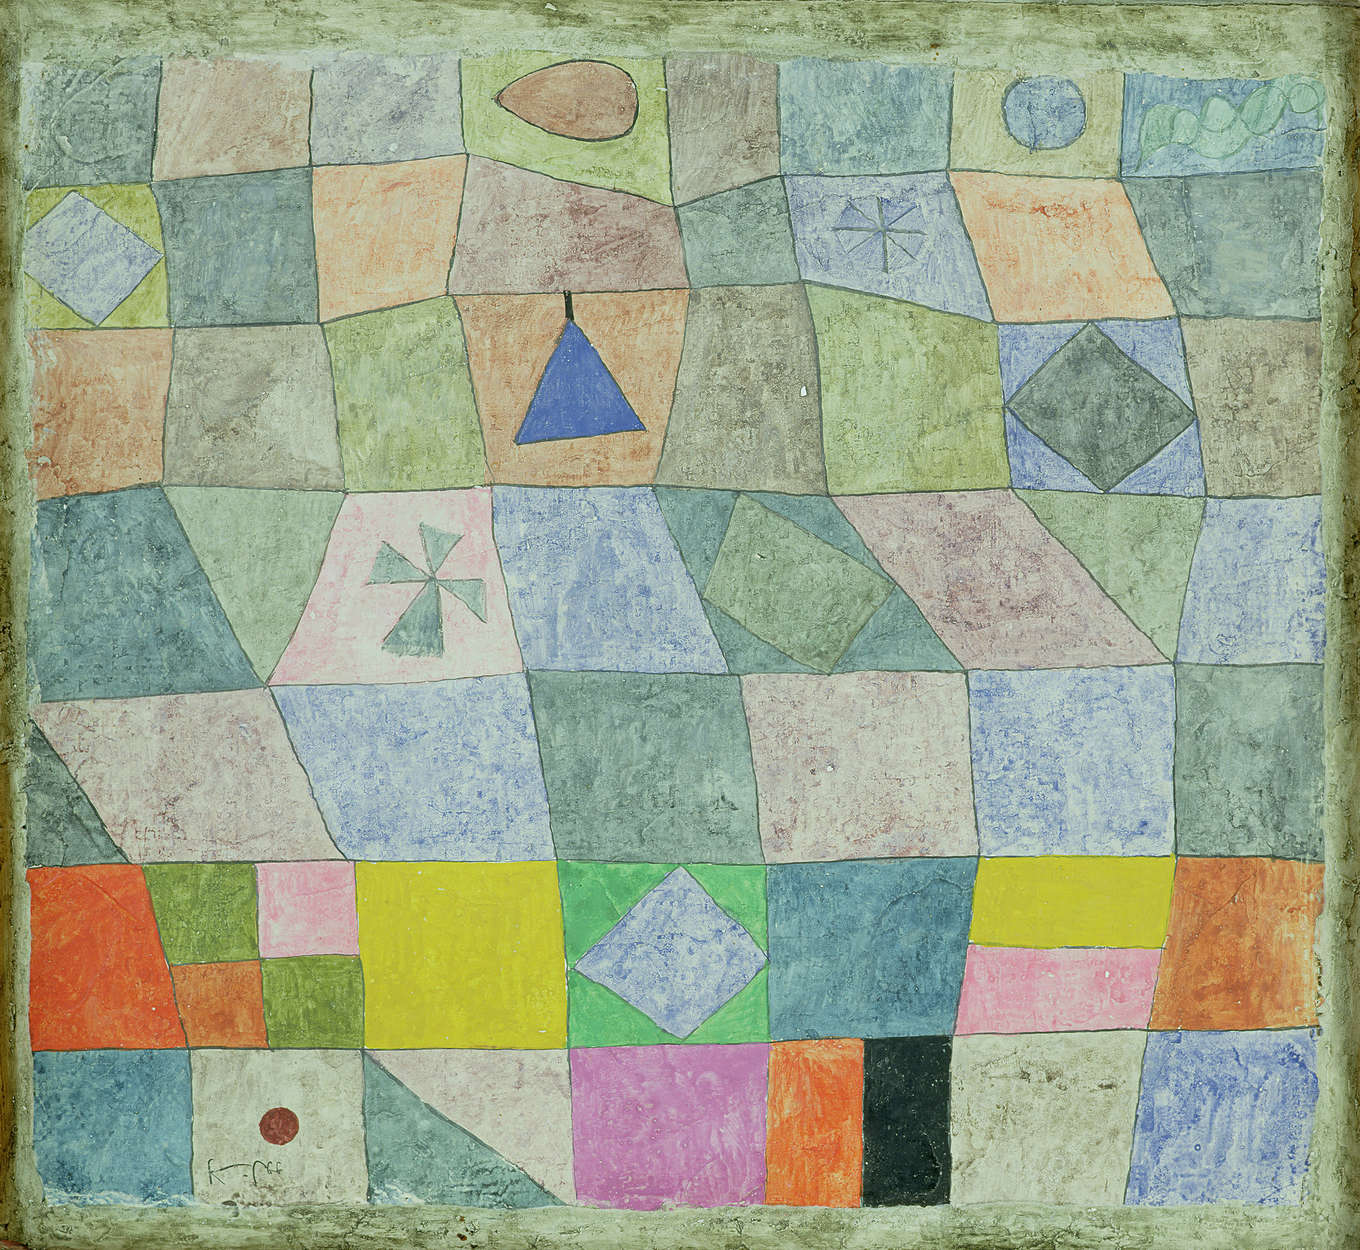             Papier peint panoramique "Jeu amical" de Paul Klee
        